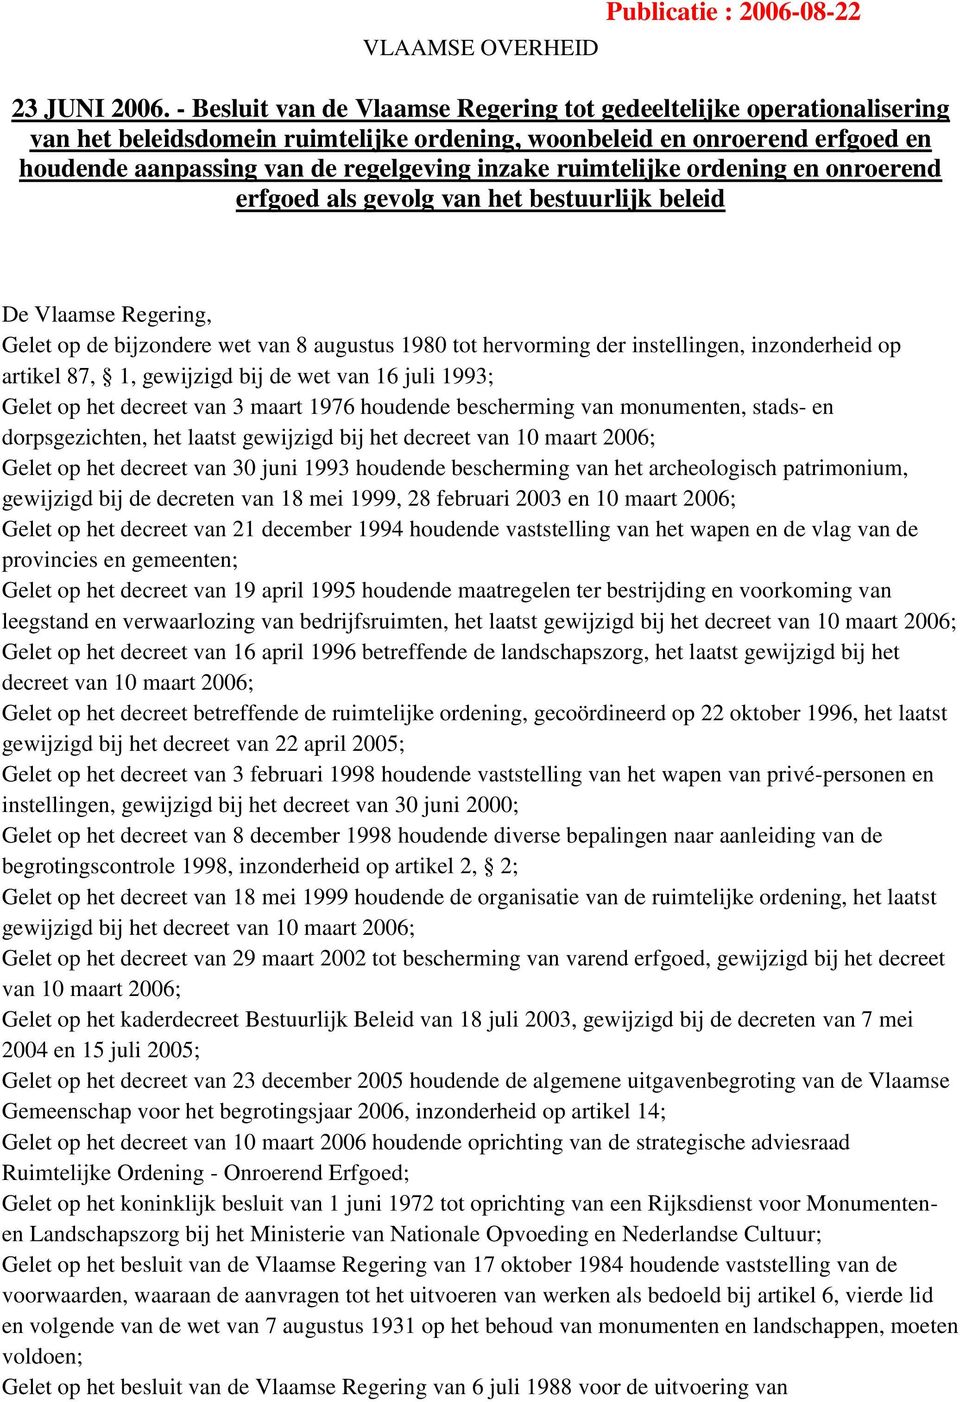 ruimtelijke ordening en onroerend erfgoed als gevolg van het bestuurlijk beleid De Vlaamse Regering, Gelet op de bijzondere wet van 8 augustus 1980 tot hervorming der instellingen, inzonderheid op